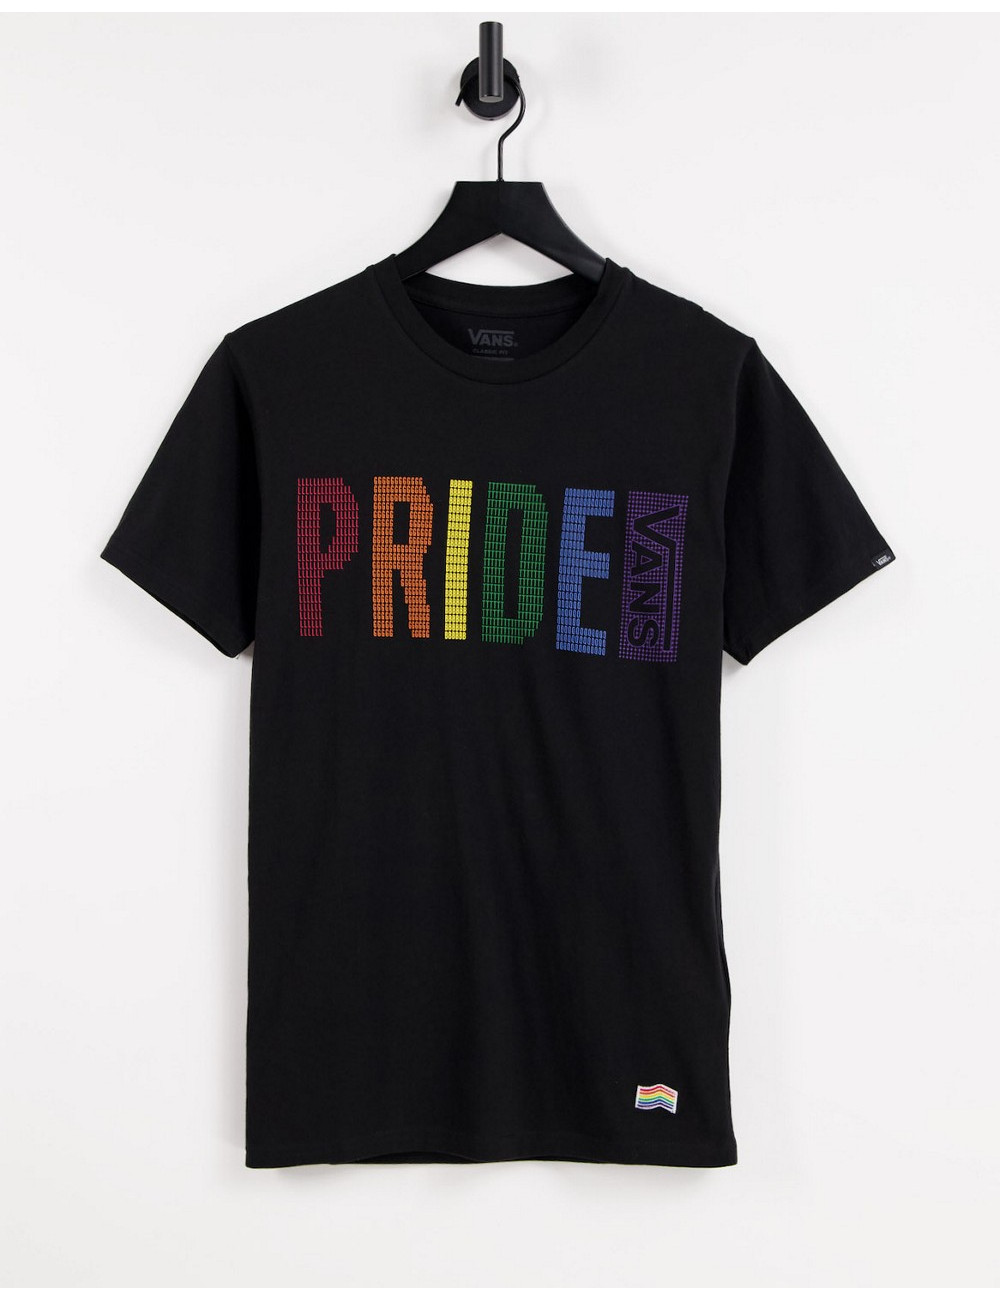 Vans Pride t-shirt in black